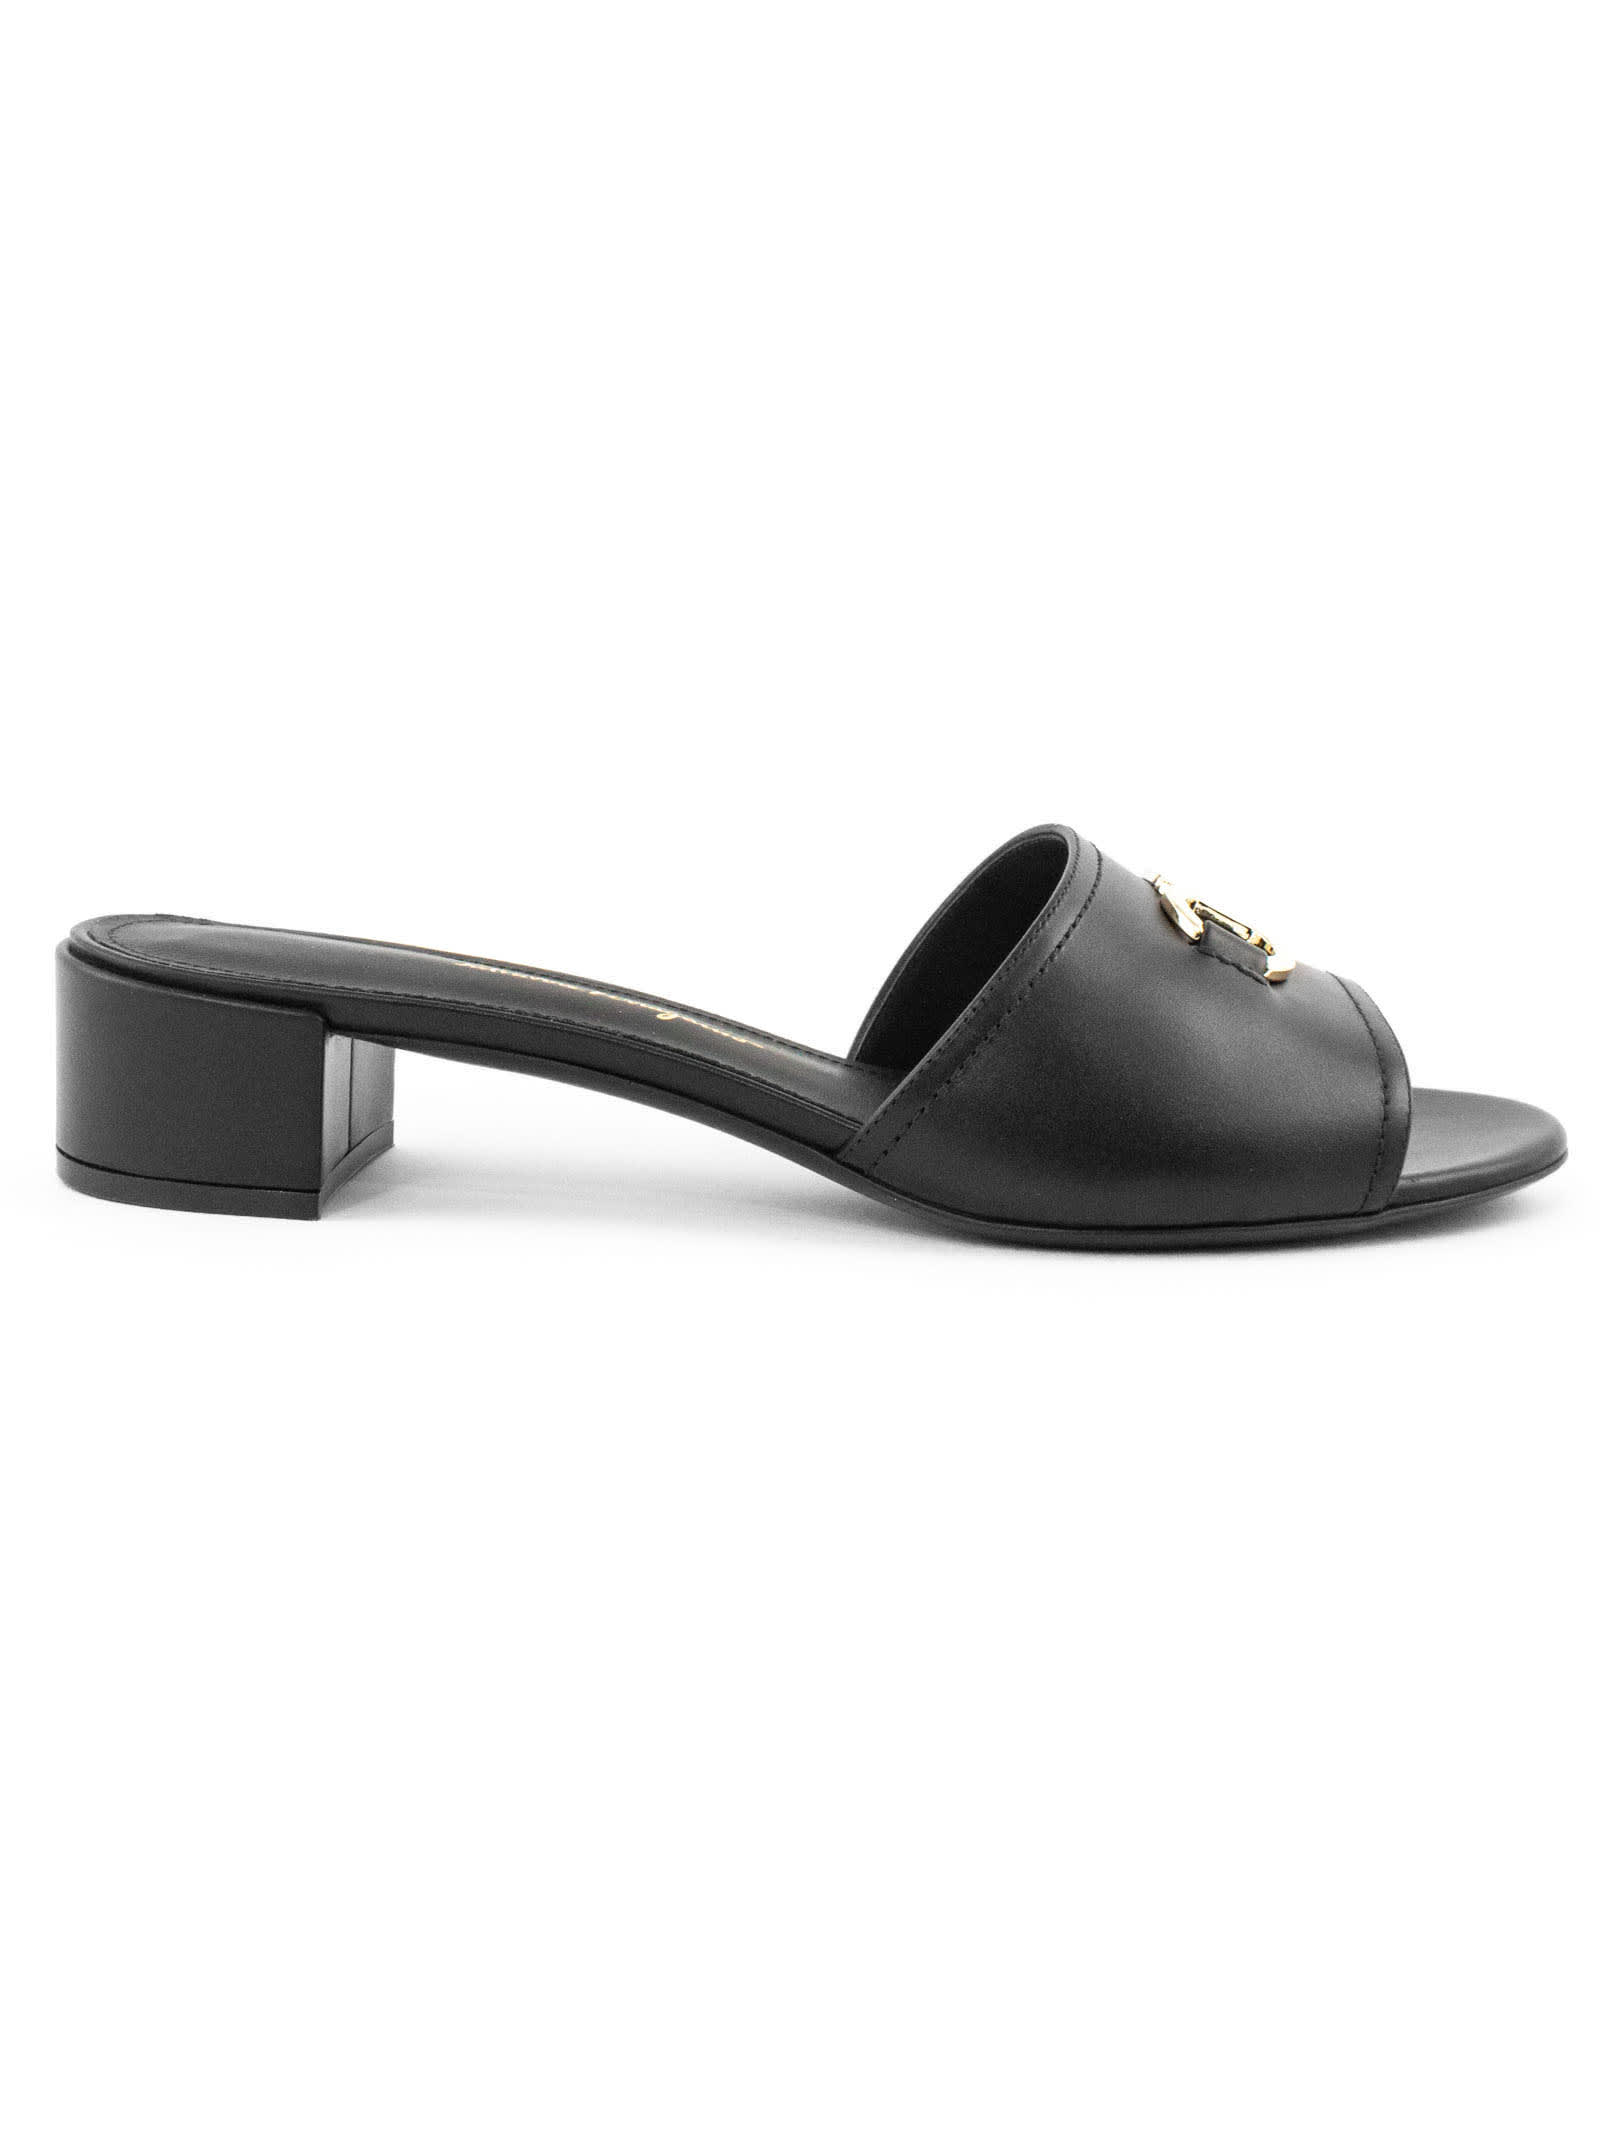 Ferragamo Clare Black Leather Sandal In Nero